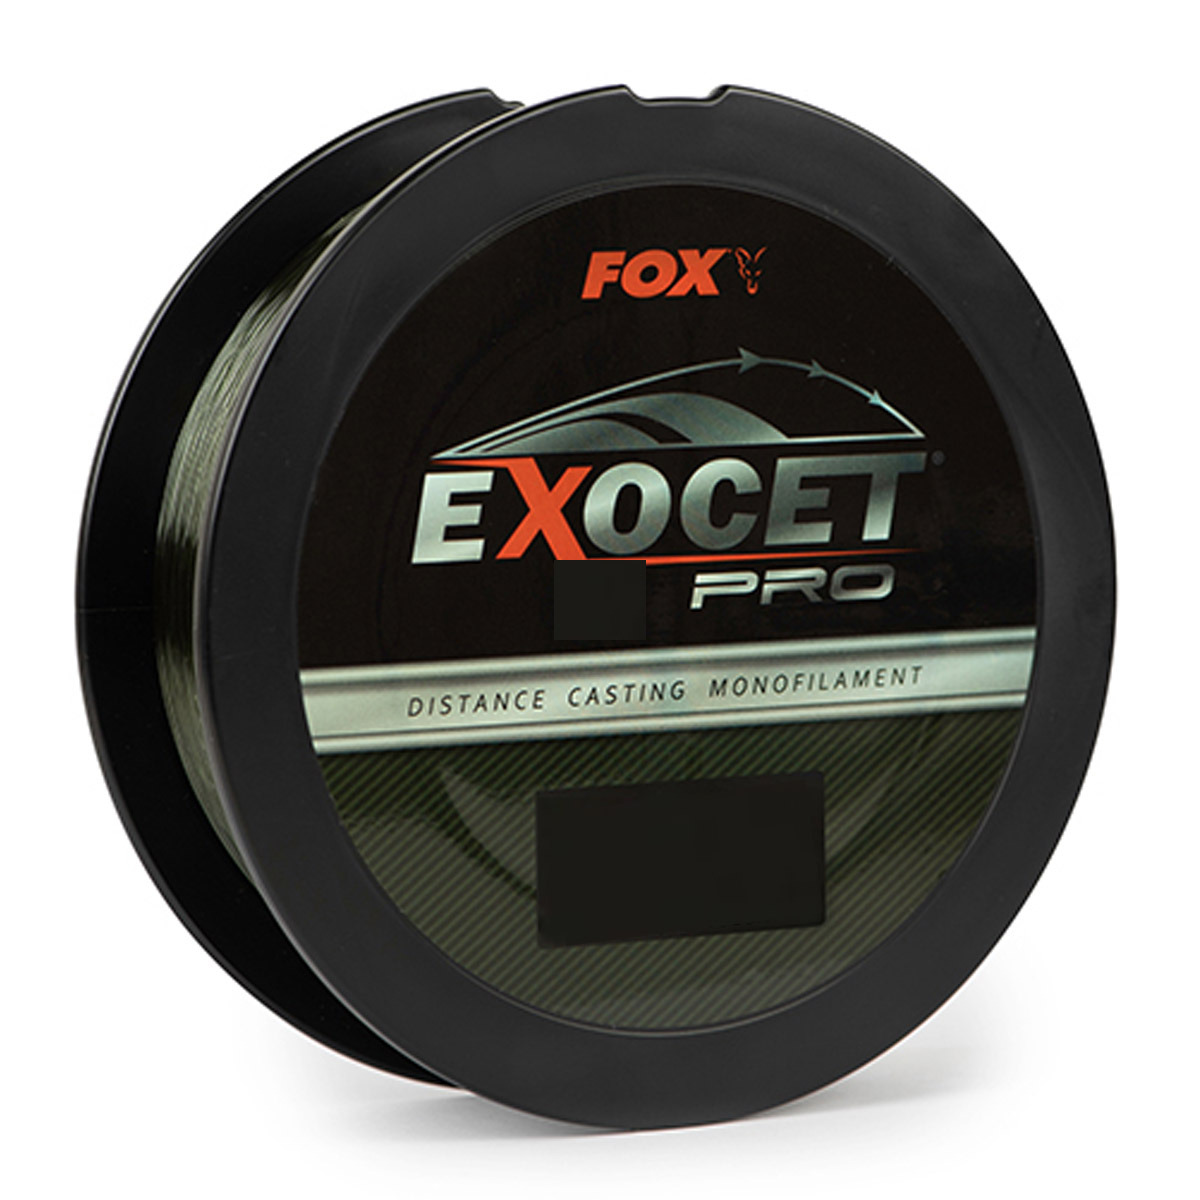 Fox Exocet Pro Lo-Vis Green -  10 lbs -  13 lbs -  20 lbs -  23 lbs -  16 lbs -  18 lbs